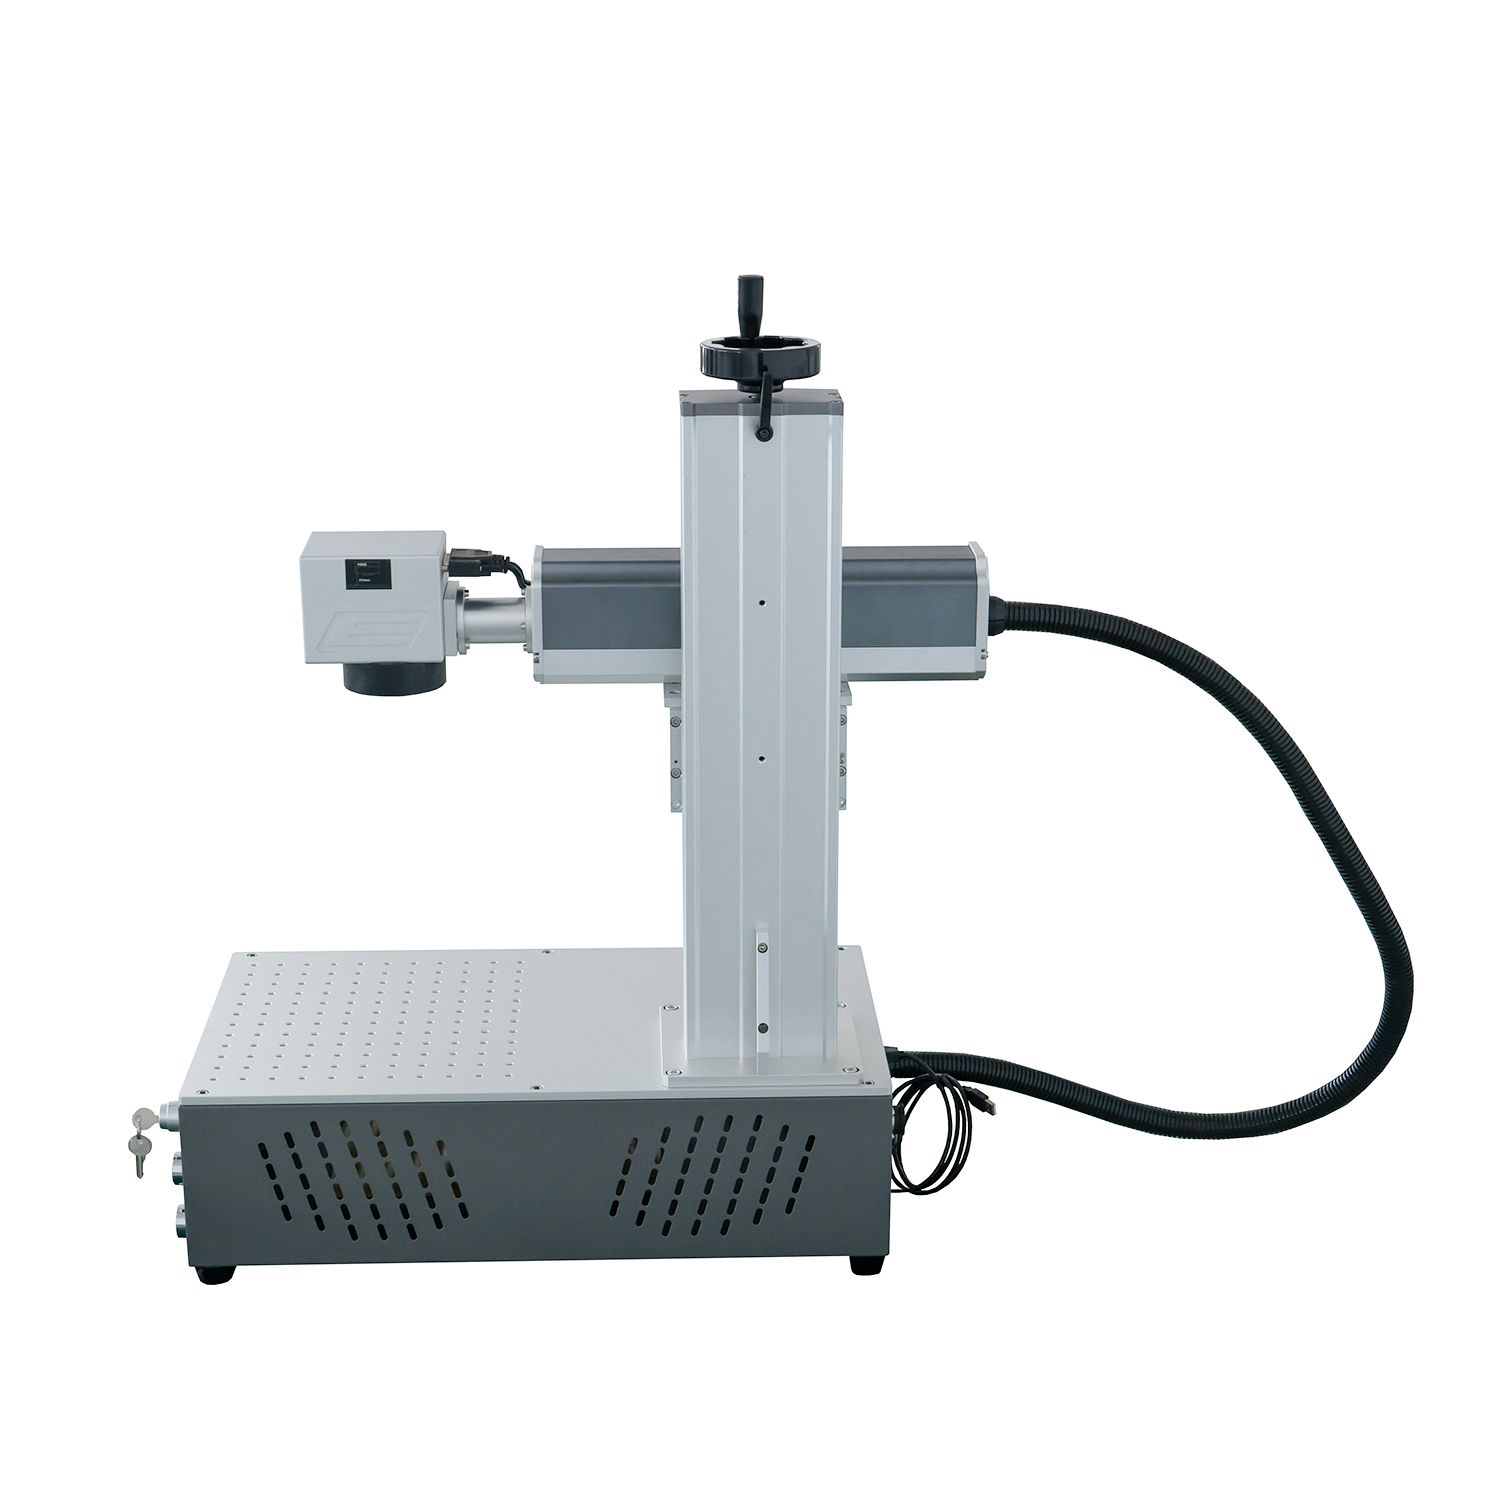 Faserbeschriftungsmaschine Laserbeschriftungsmaschine und Lasergravurmaschine Raycus Color 20W 30W 50W